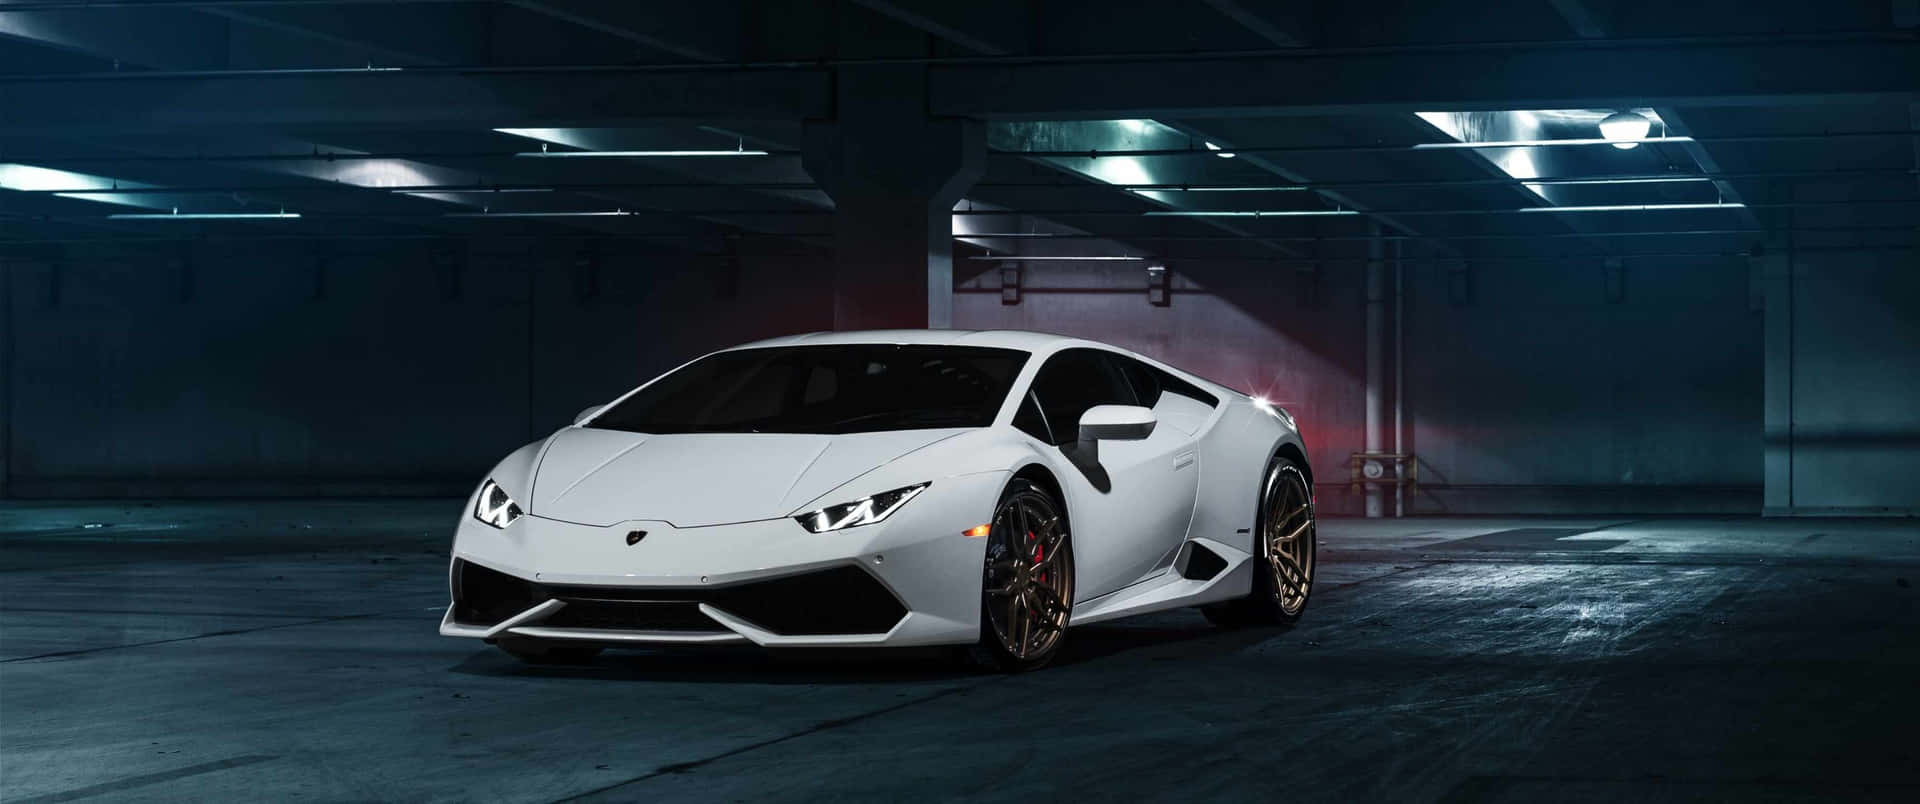 A White Sports Car Is Parked In A Dark Garage